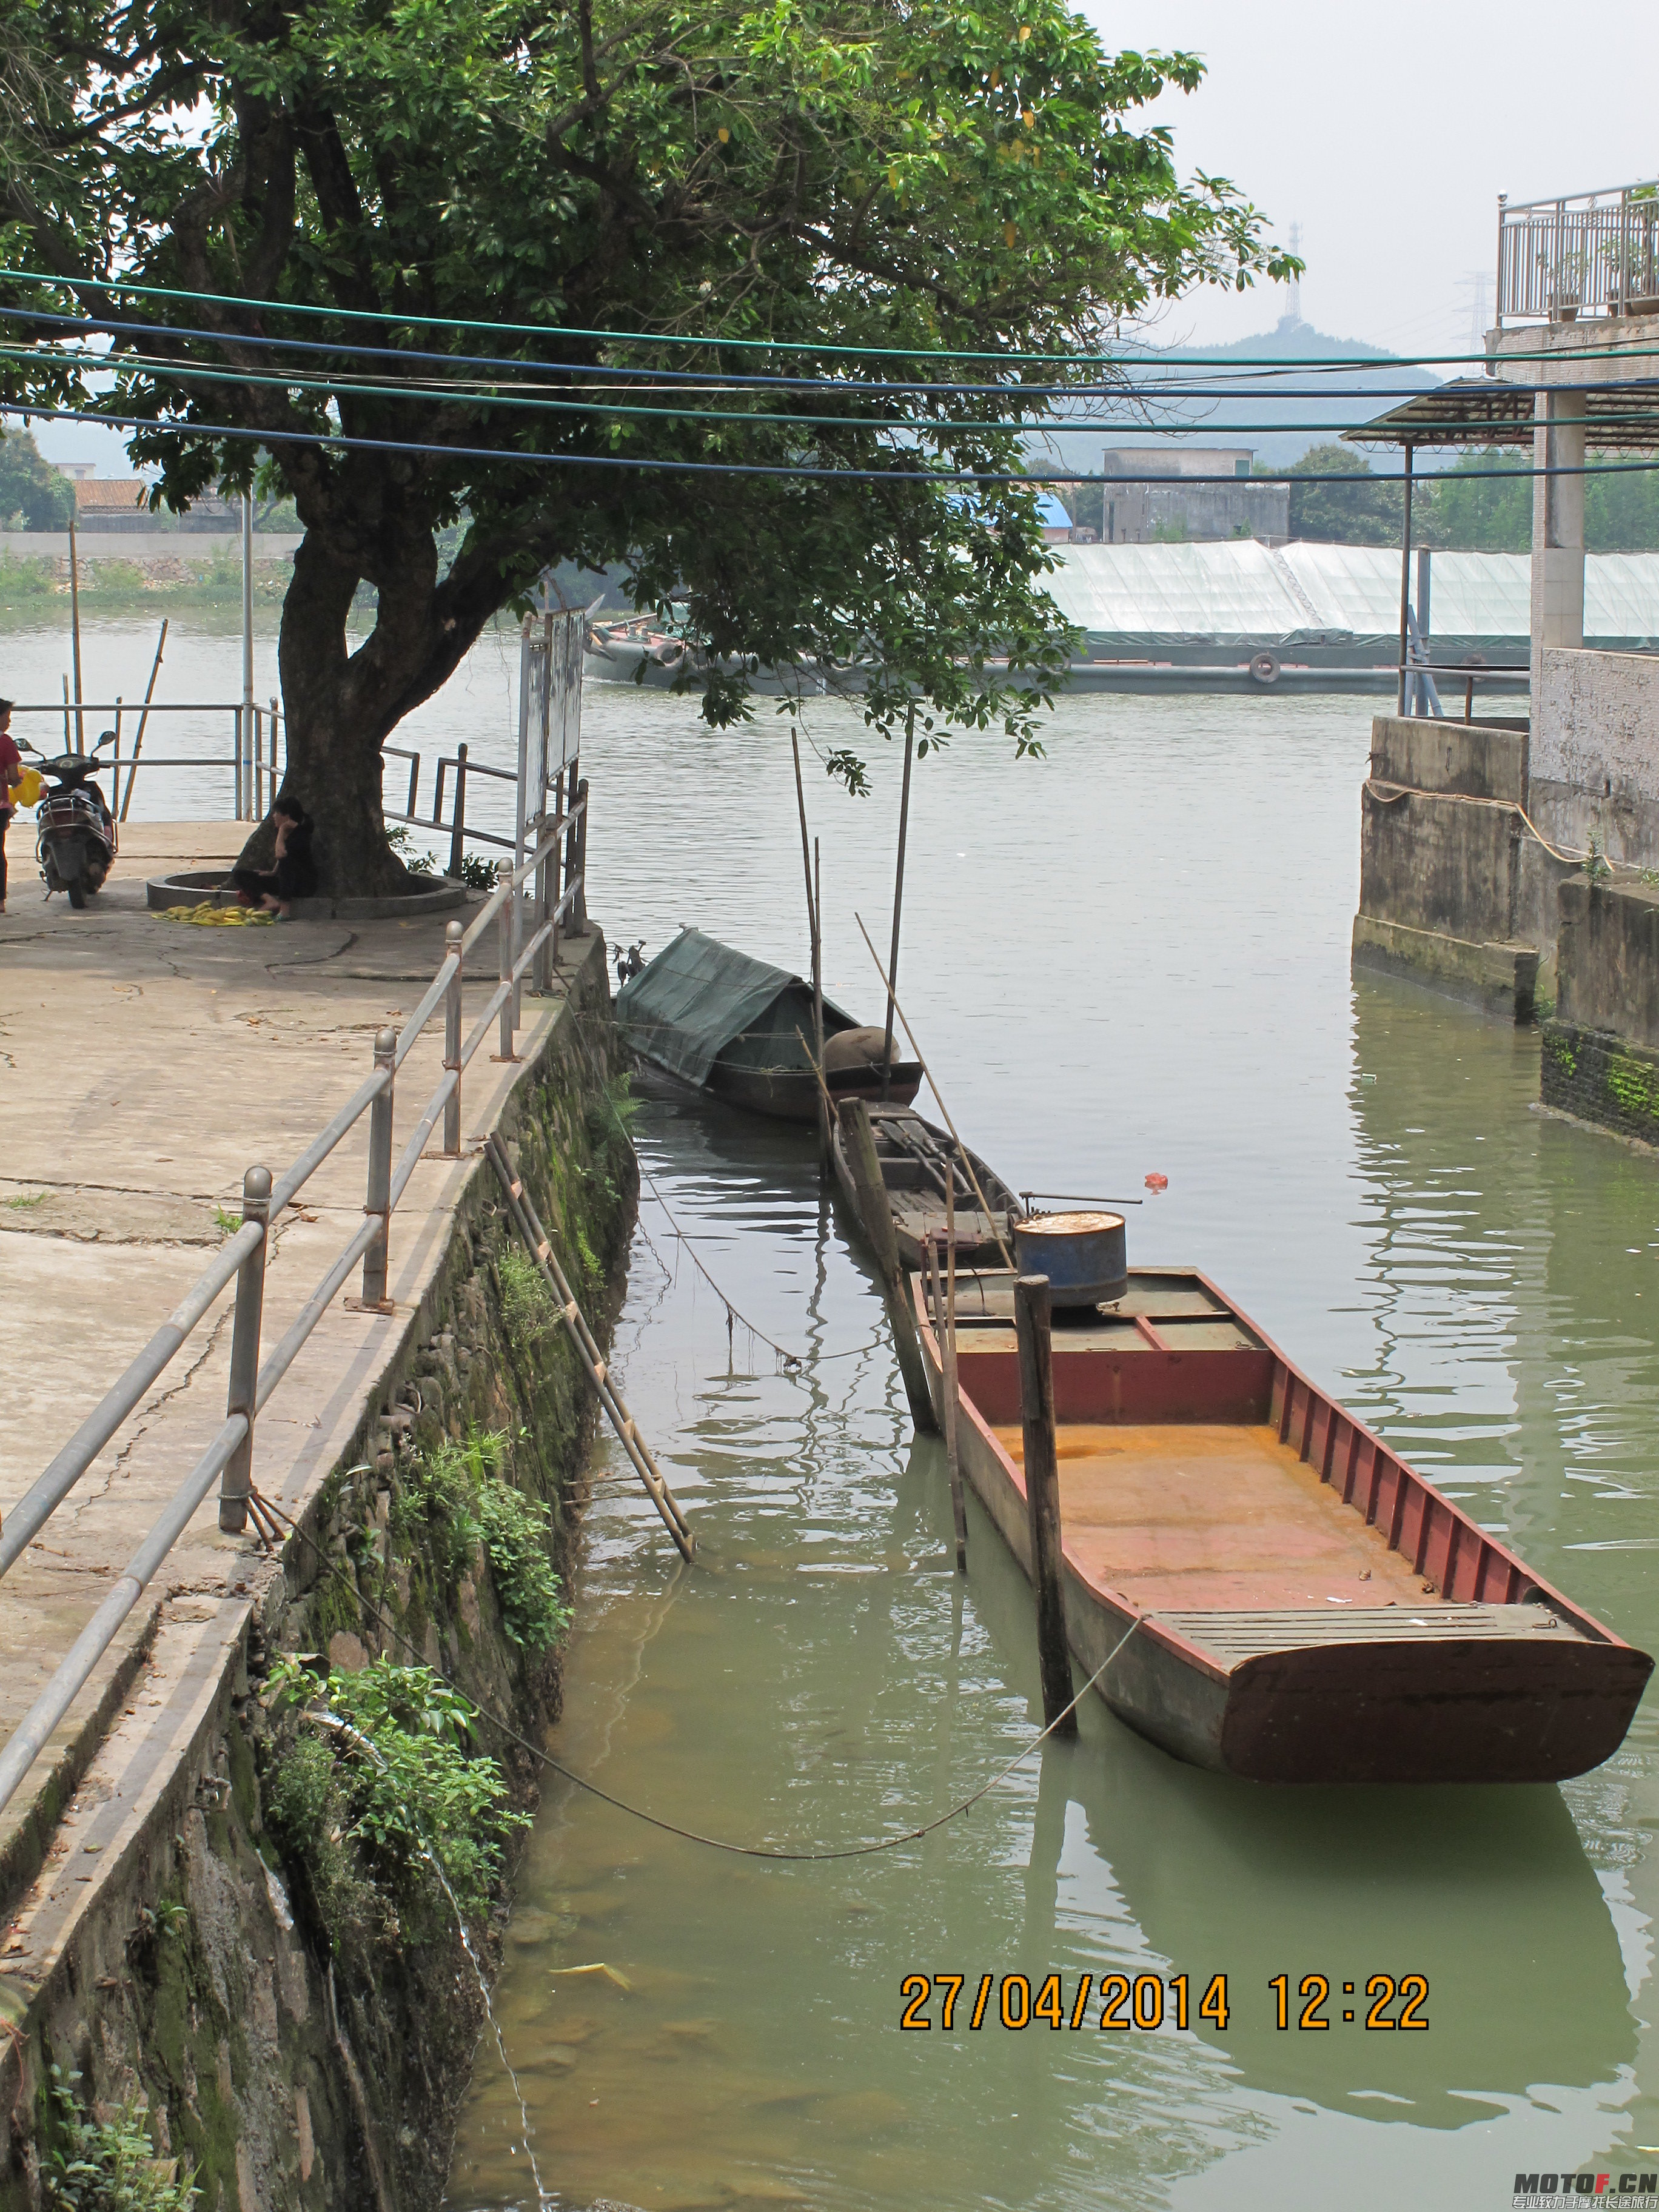 小艇是水乡常用的交通工具